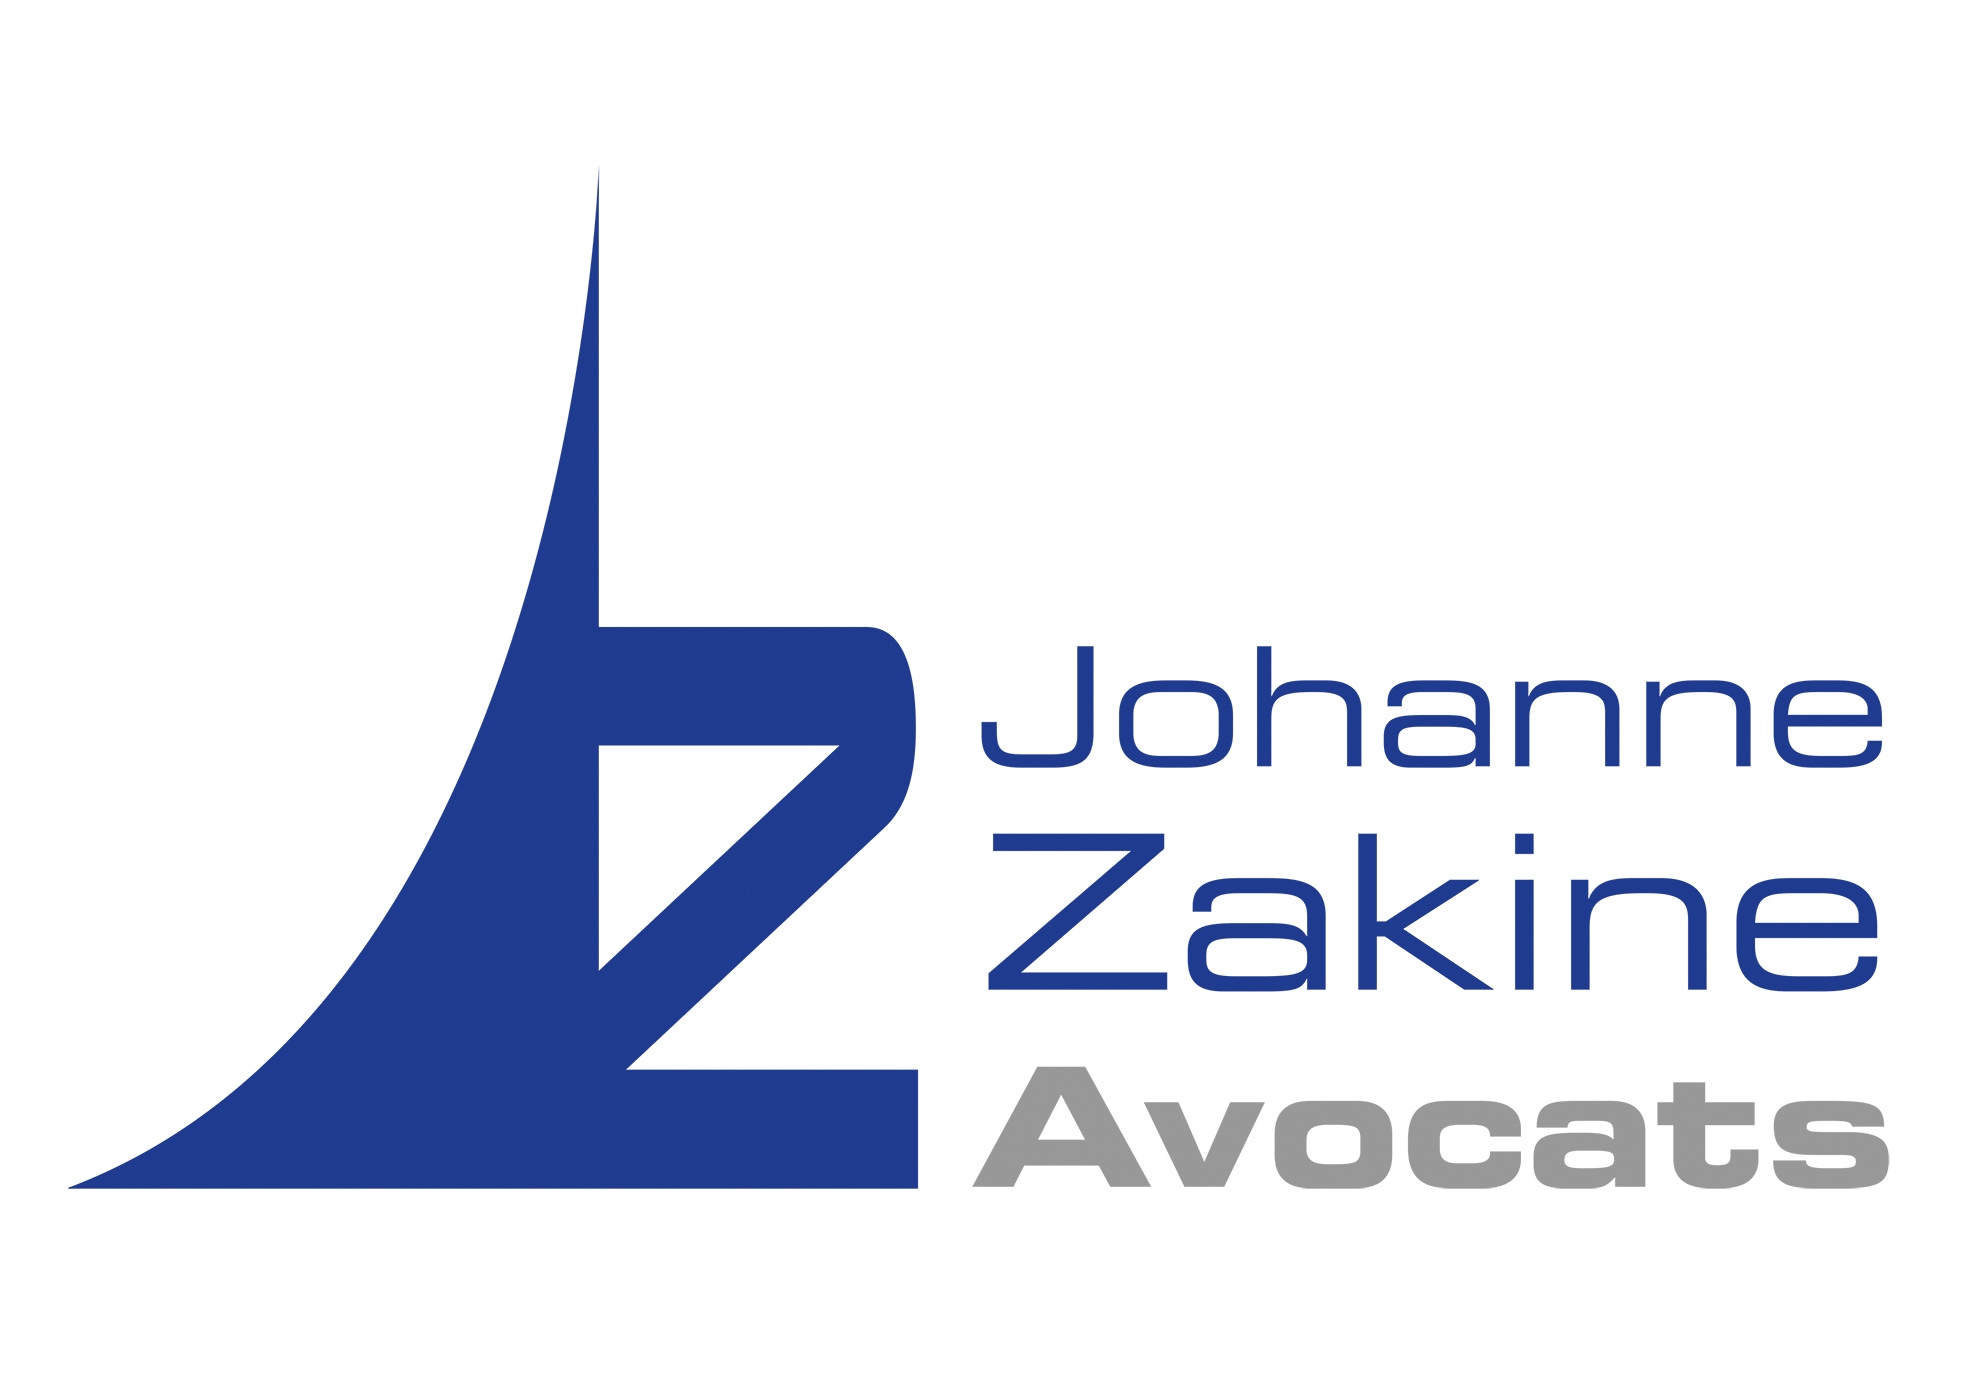 zavocats-logo